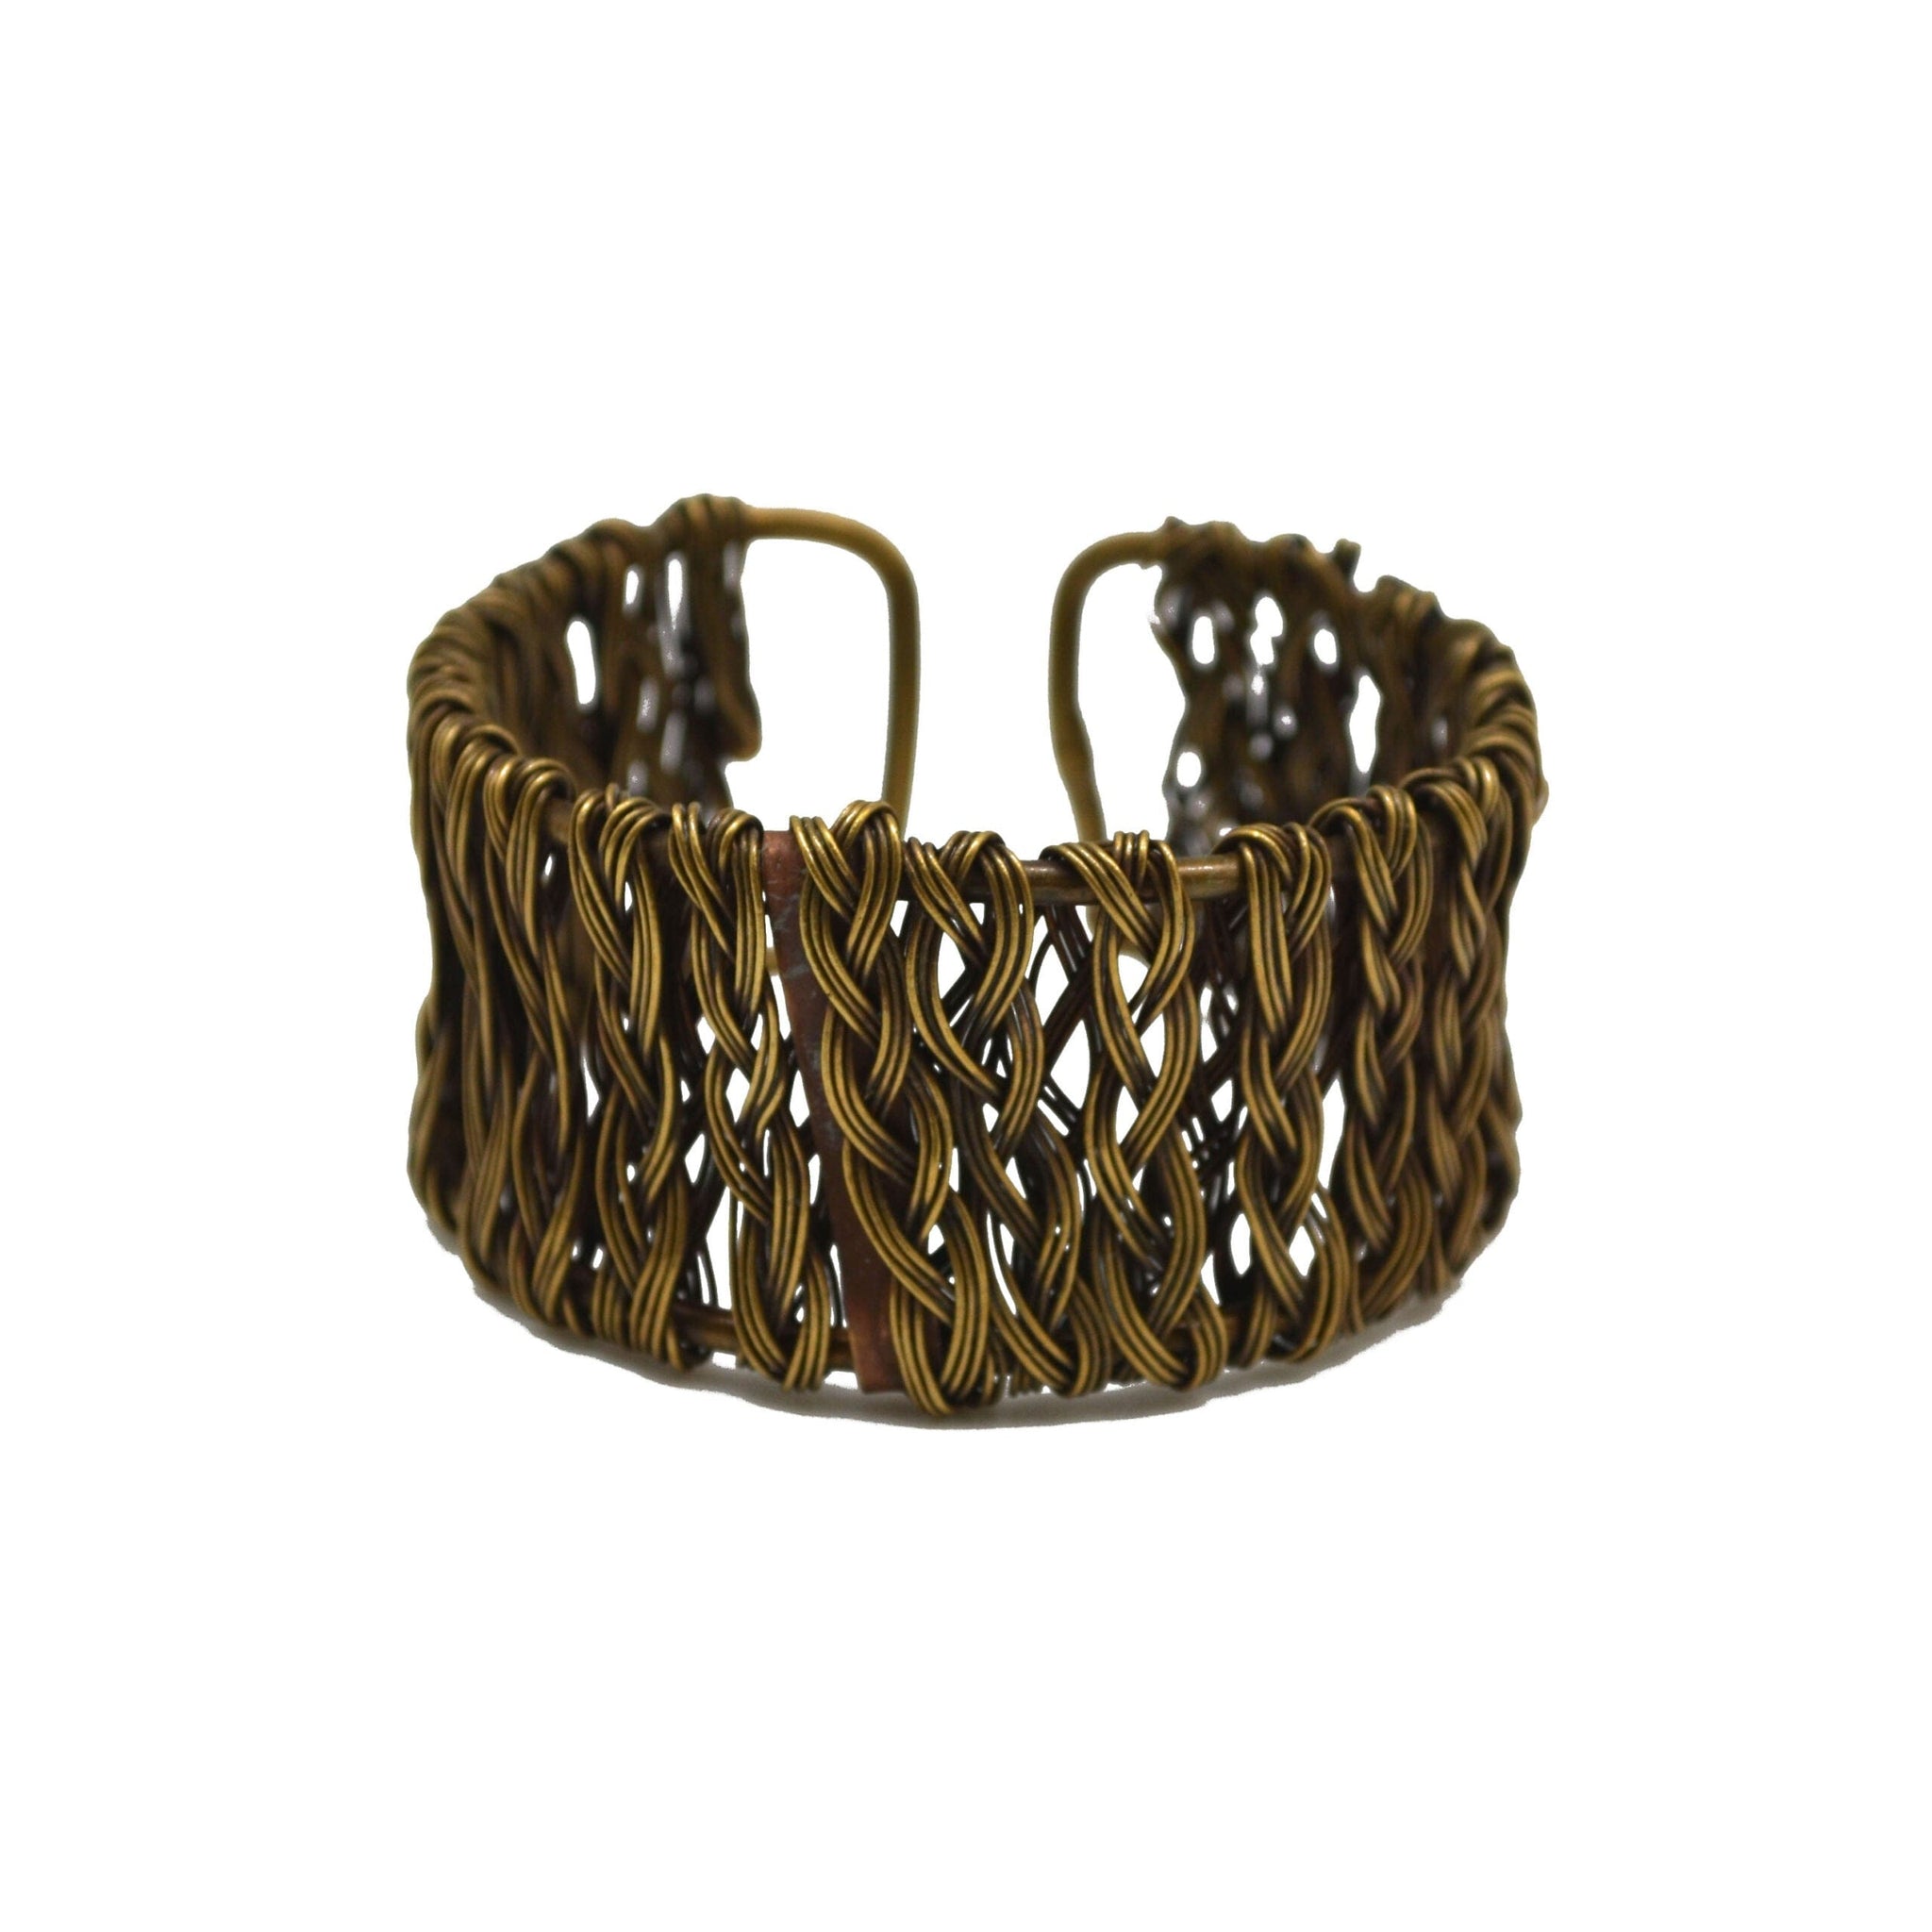 Anju Basketweave Brass Vertical Braided Rows Cuff Bracelet - Five and Divine